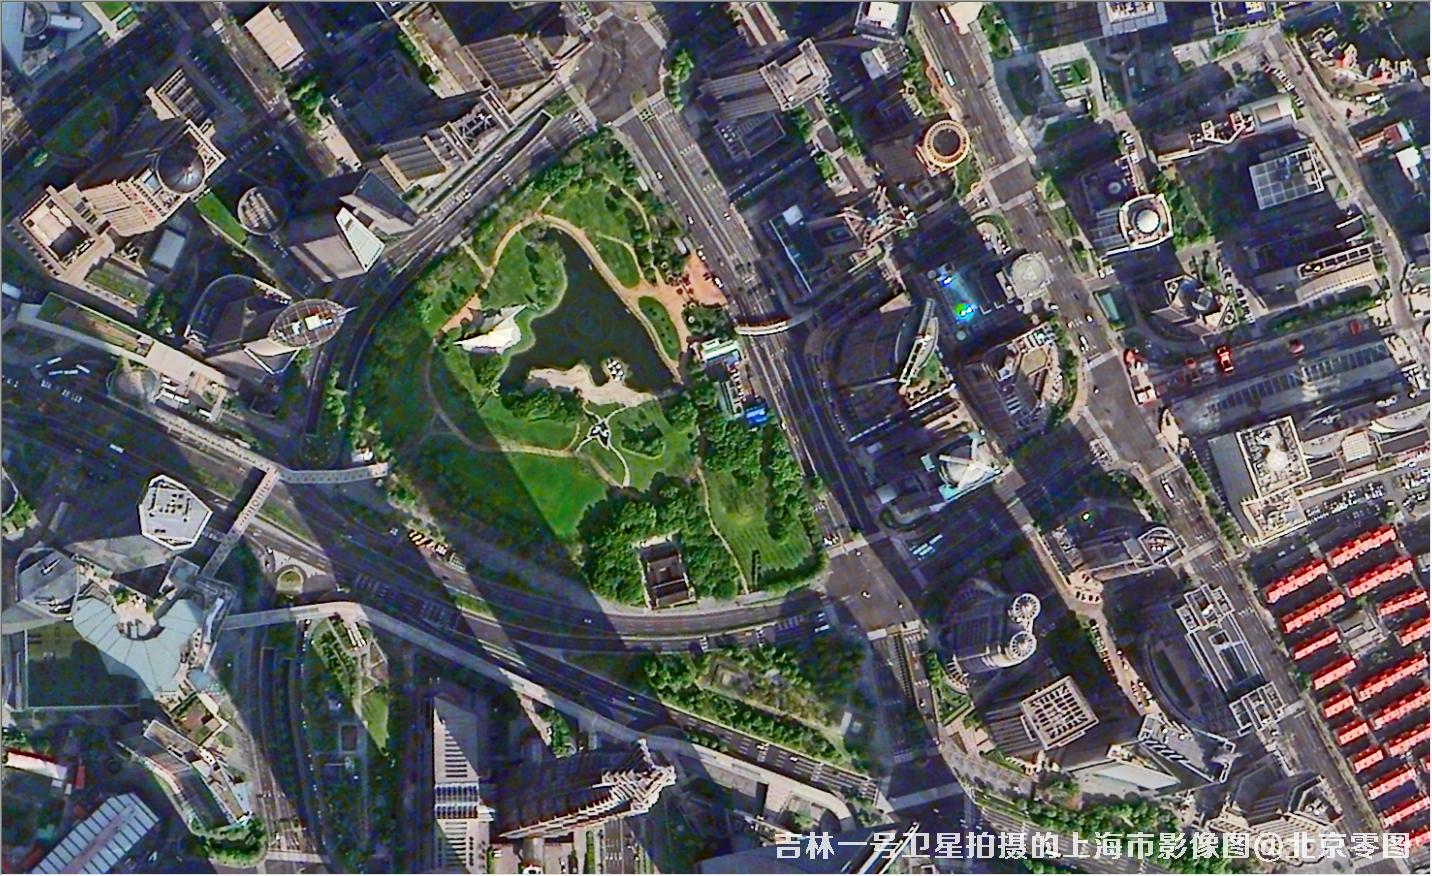 国产0.75米吉林一号卫星拍摄的高清图片